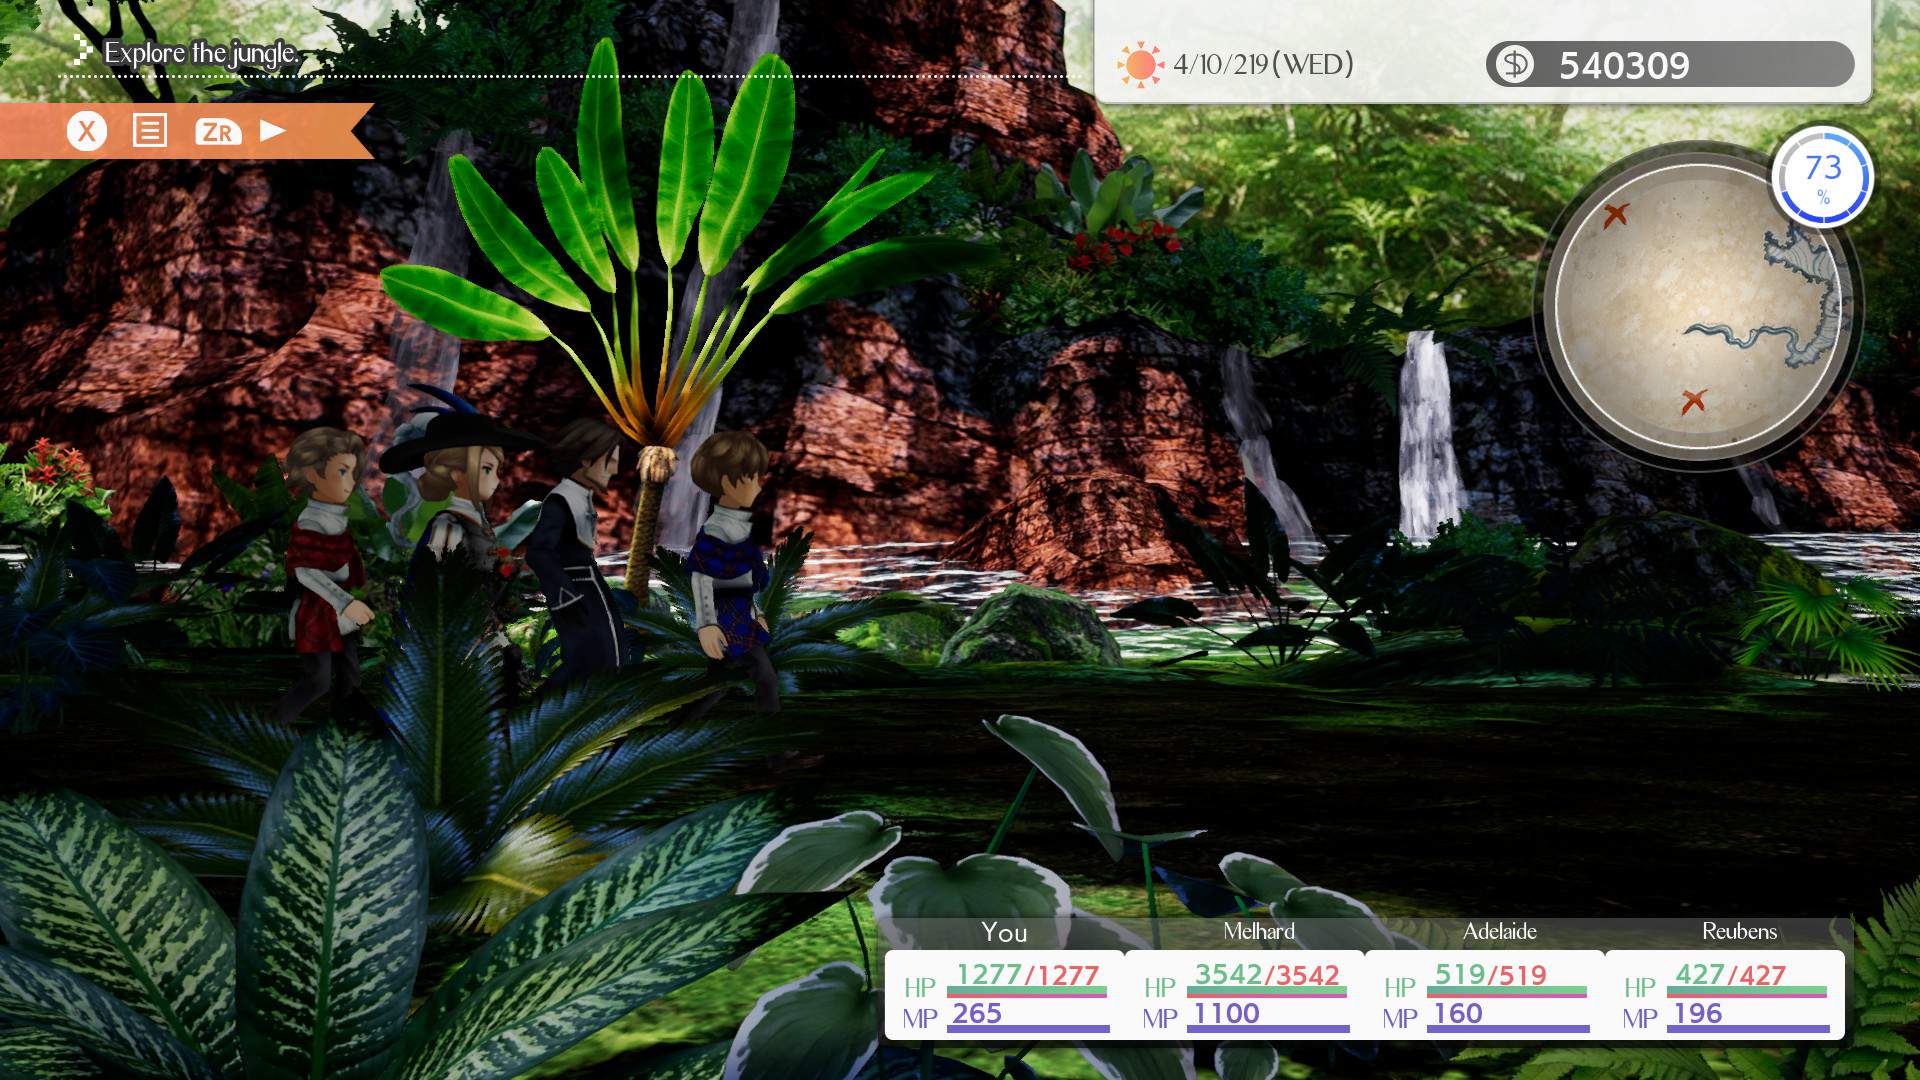 Capture d'écran du groupe de 4 personnages explorant une jungle lors d'une expédition